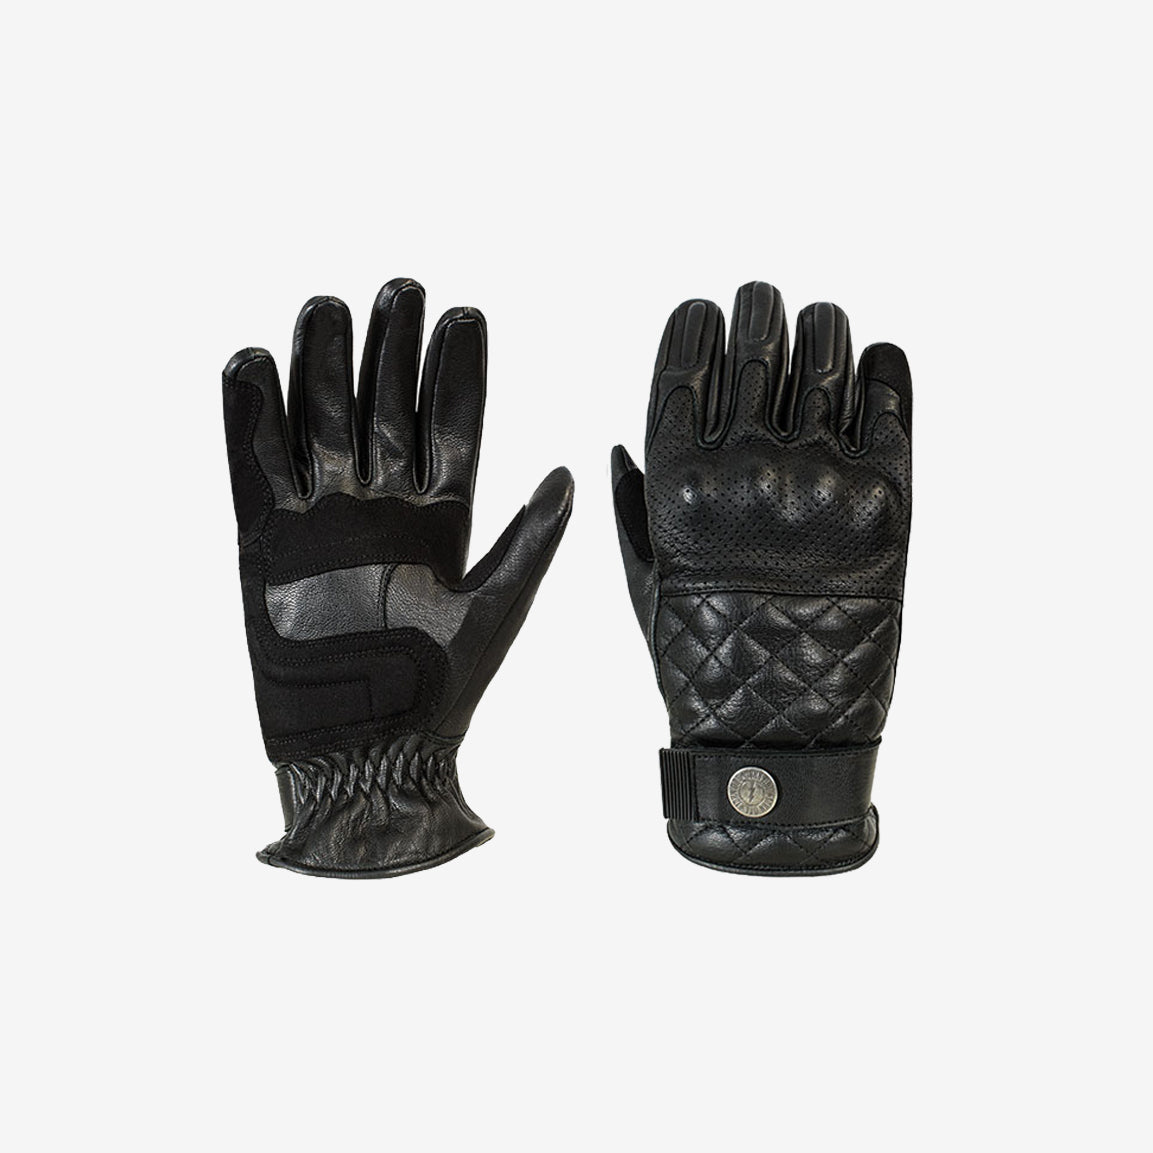 John Doe Tracker XTM Gloves - black. CE-zertifizierte und extrem solide Motorradhandschuhe aus schwarzem Leder mit raffinierten Details wie eine Touchscreen-Kompatibilität. Sehr hohe Sicherheit durch Knöchelschutz und Lederverstärkungen.